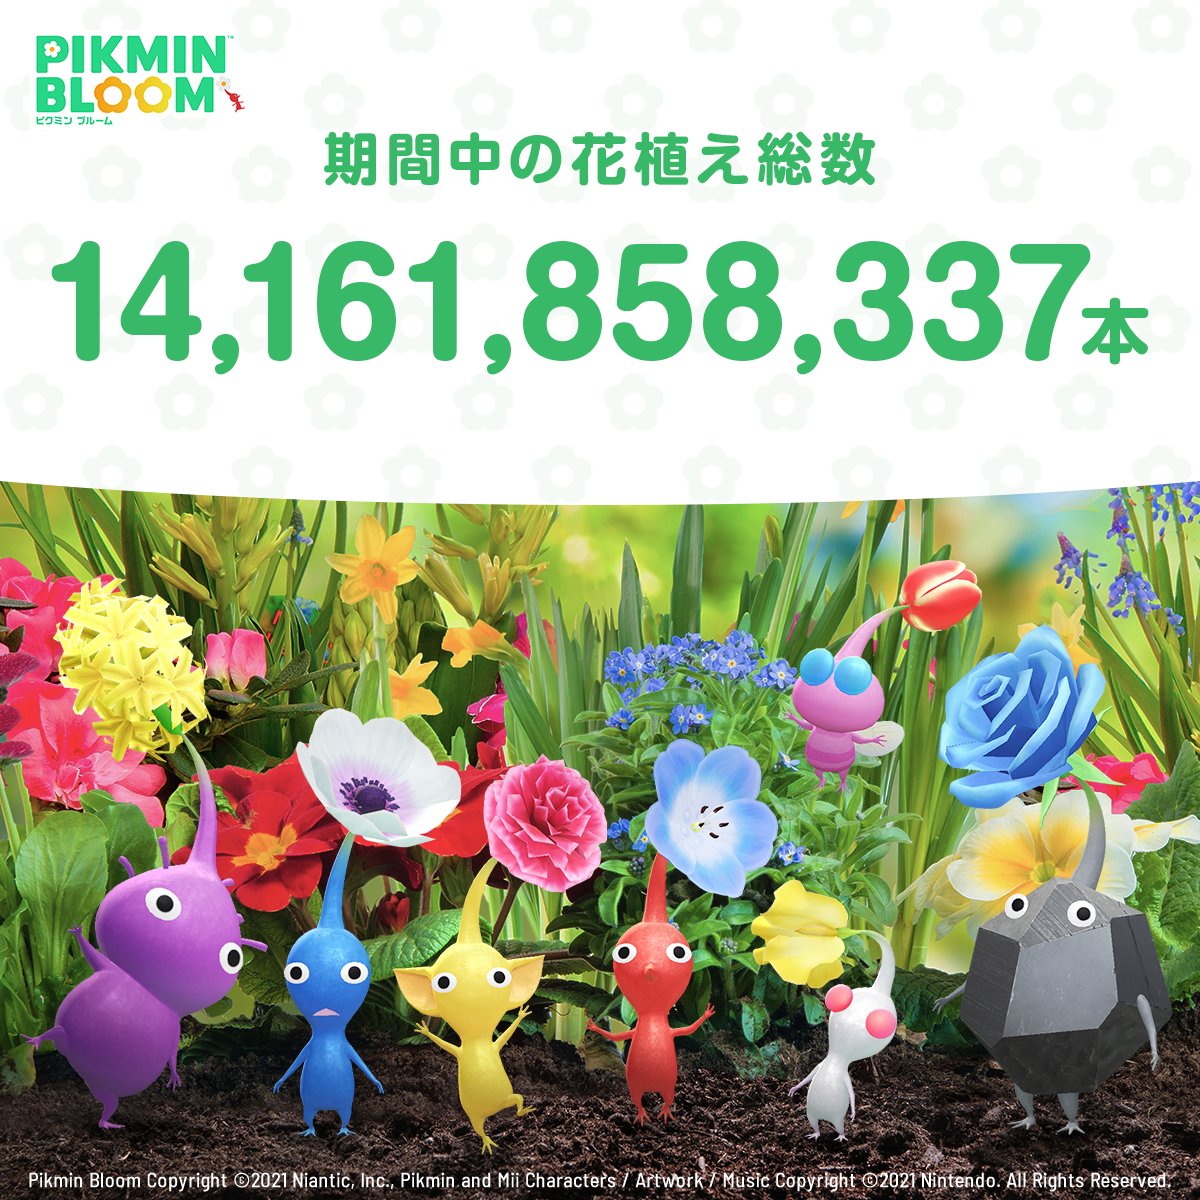 アースデイイベント結果発表！

期間中にピクミンブルームで
植えられた花は…14,161,858,337本！💐✨

みなさんお疲れ様でした🌎🌱

#EarthDay_PB